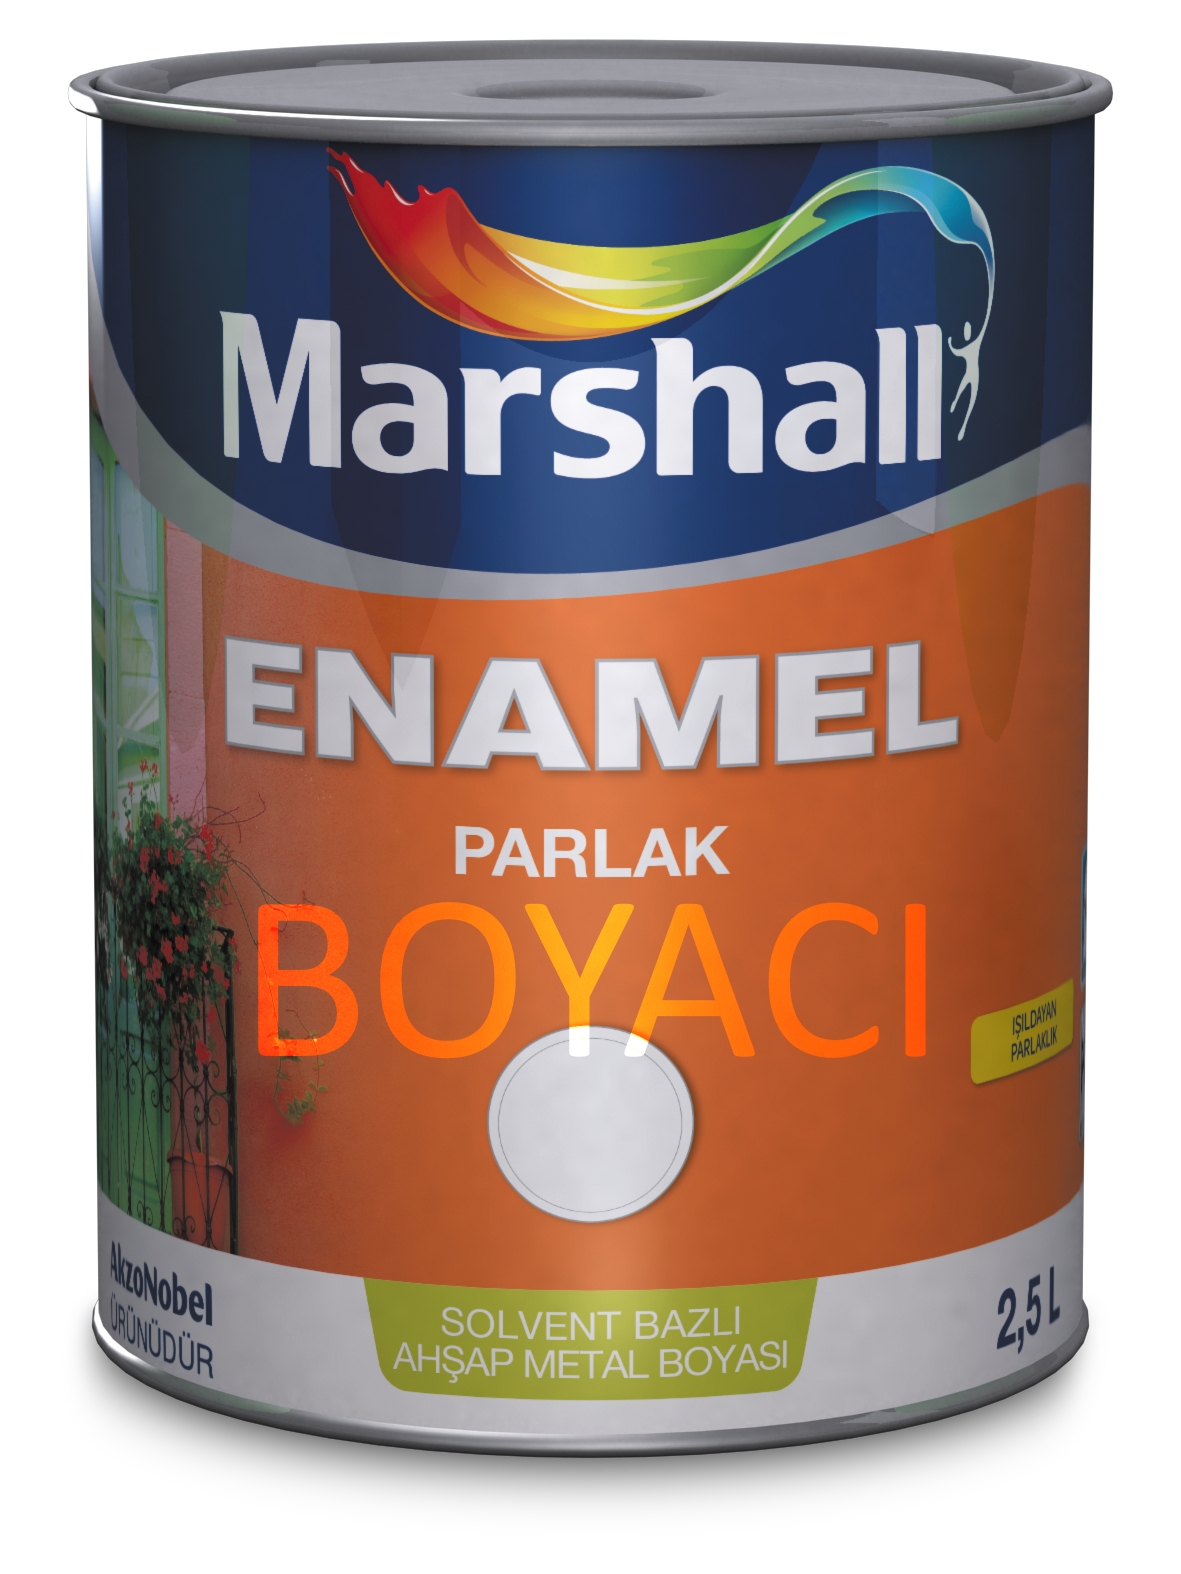 MARSHALL ENAMEL PARLAK SOLVENT BAZLI AHŞAP-METAL BOYASI 2,5 LT